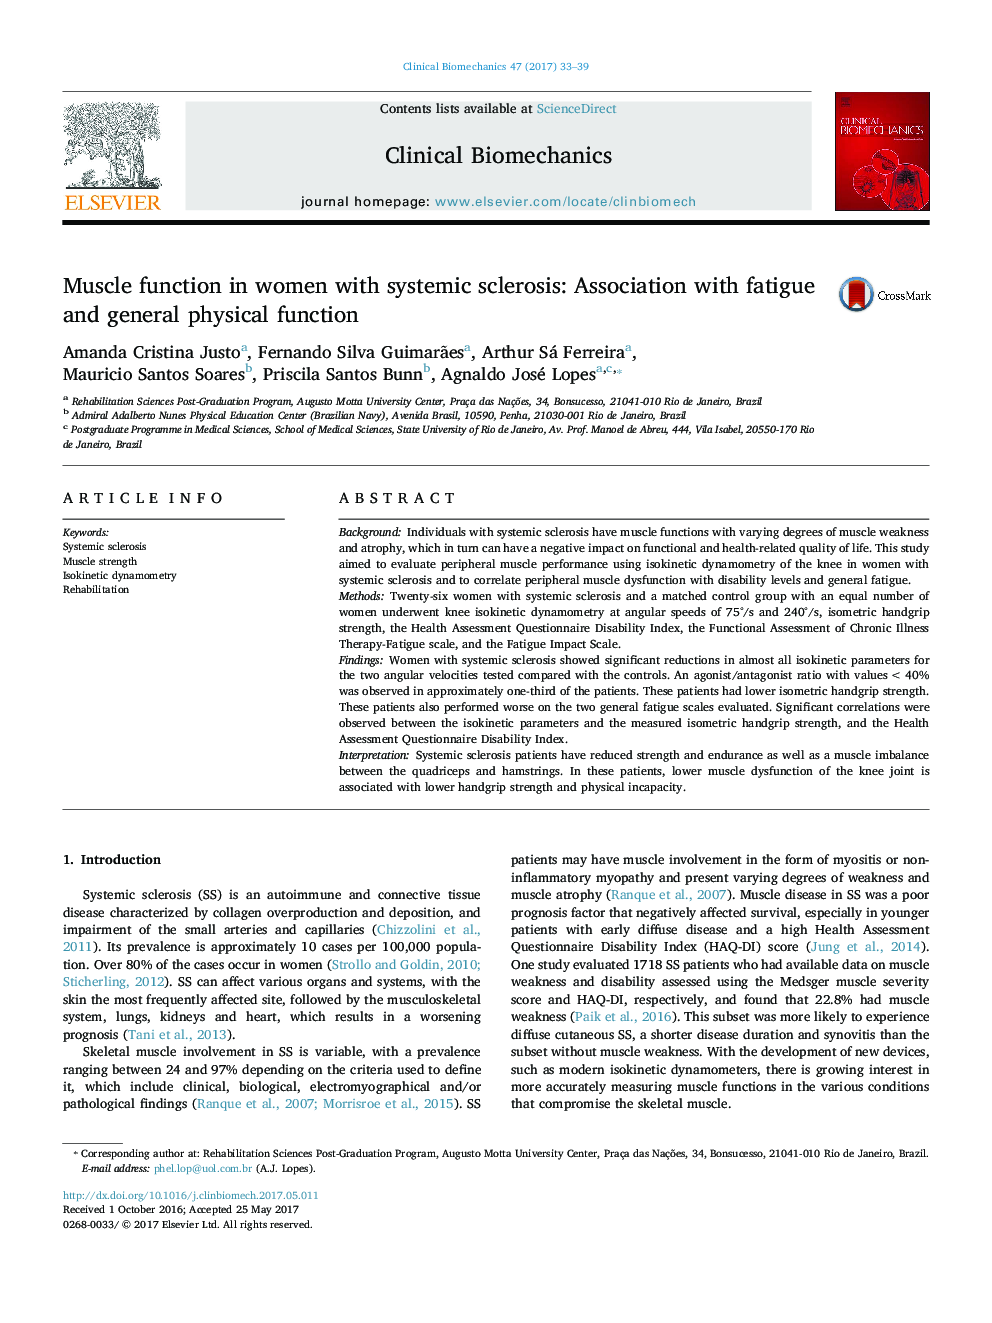 عملکرد عضلانی در زنان مبتلا به اسکلروز سیستمیک: ارتباط با خستگی و عملکرد فیزیکی عمومی 